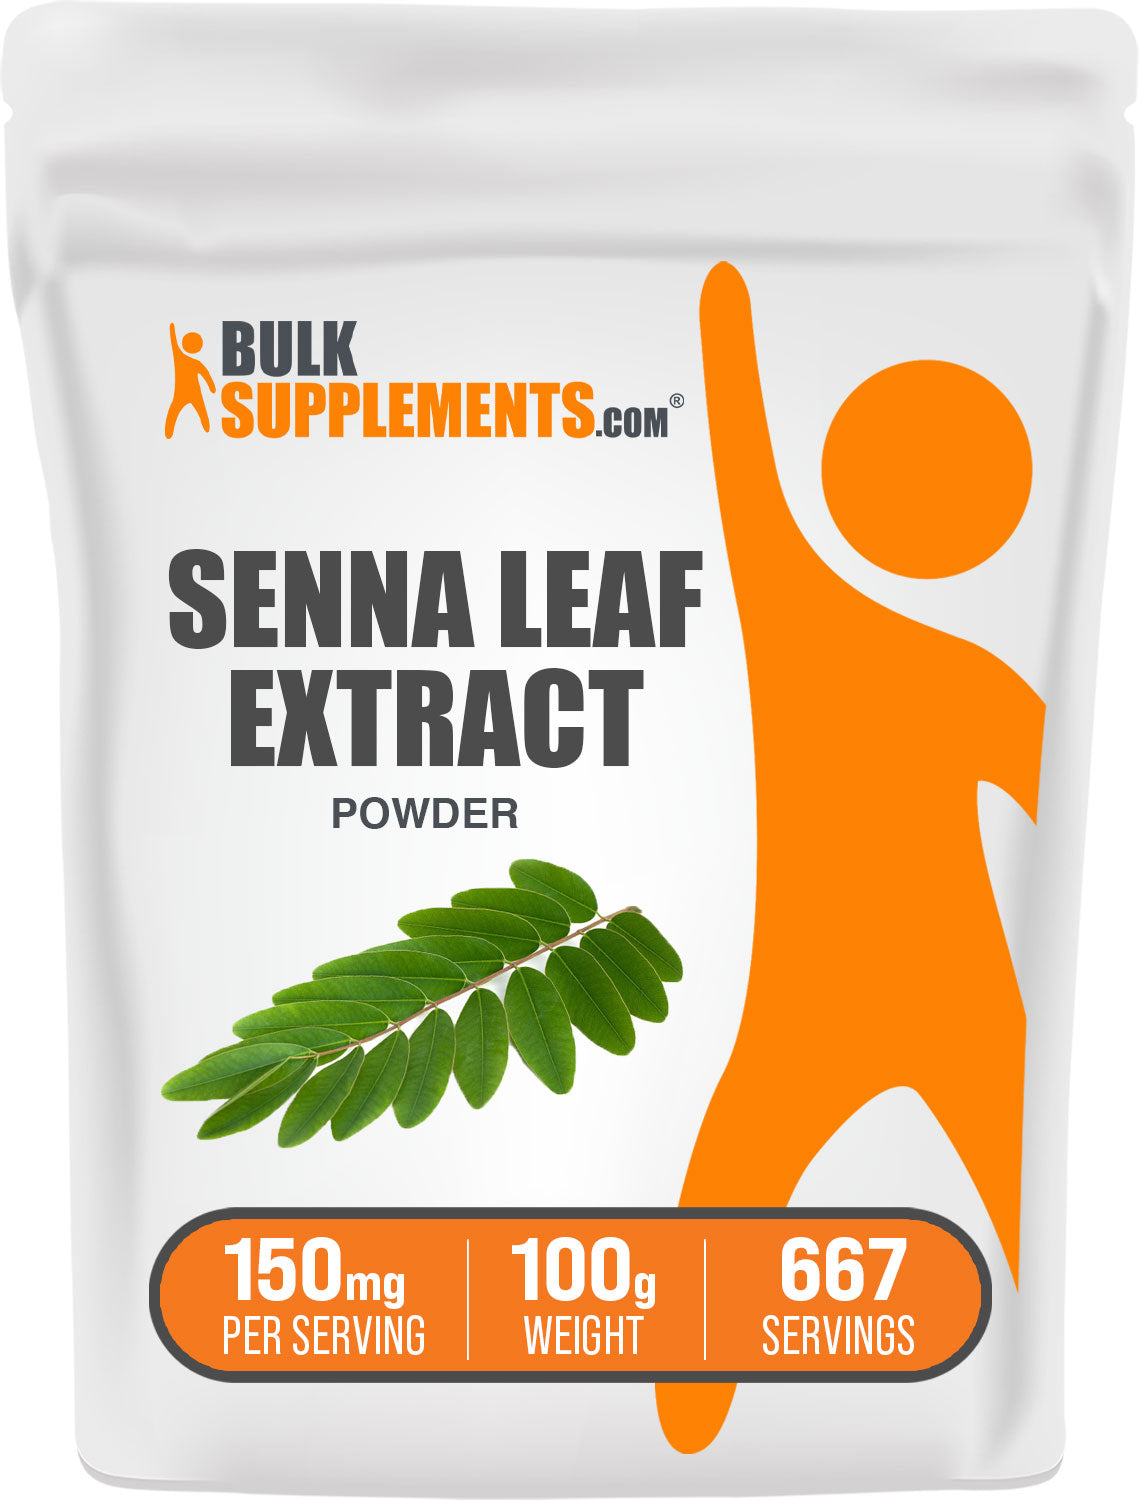 Senna Leaf Extract 100g Bag